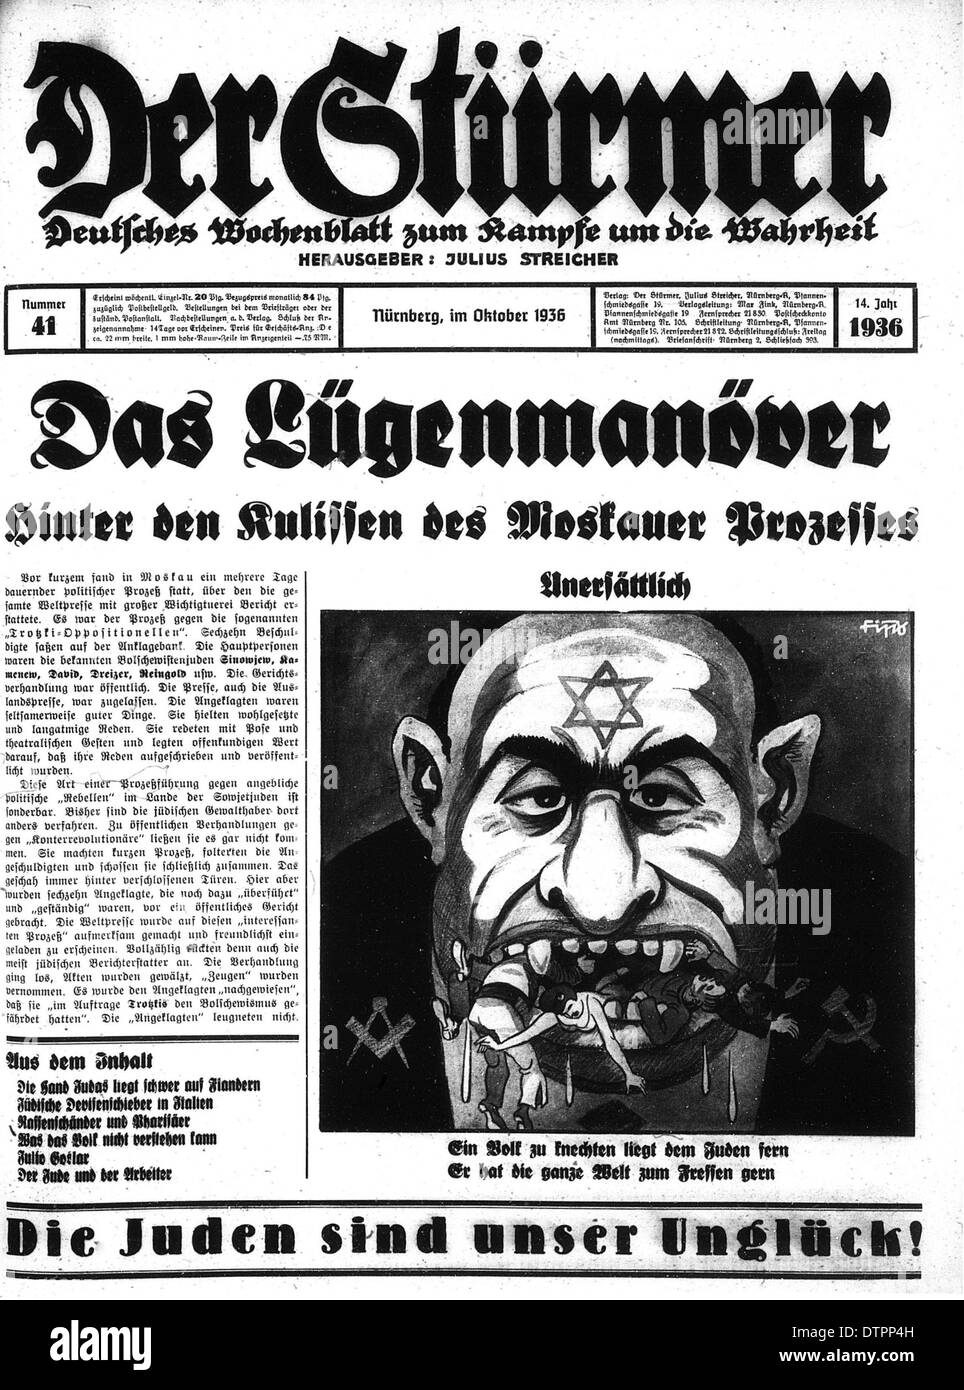 Pagina anteriore di Der Sturmer un settimanale tedesco nazista giornale pubblicato da Julius Streicher dal 1923 fino alla fine della guerra mondiale 2 in cui l'Ebreo è mostrato come un brutto, arrabbiato cerca uomo con prominente naso esagerato Foto Stock